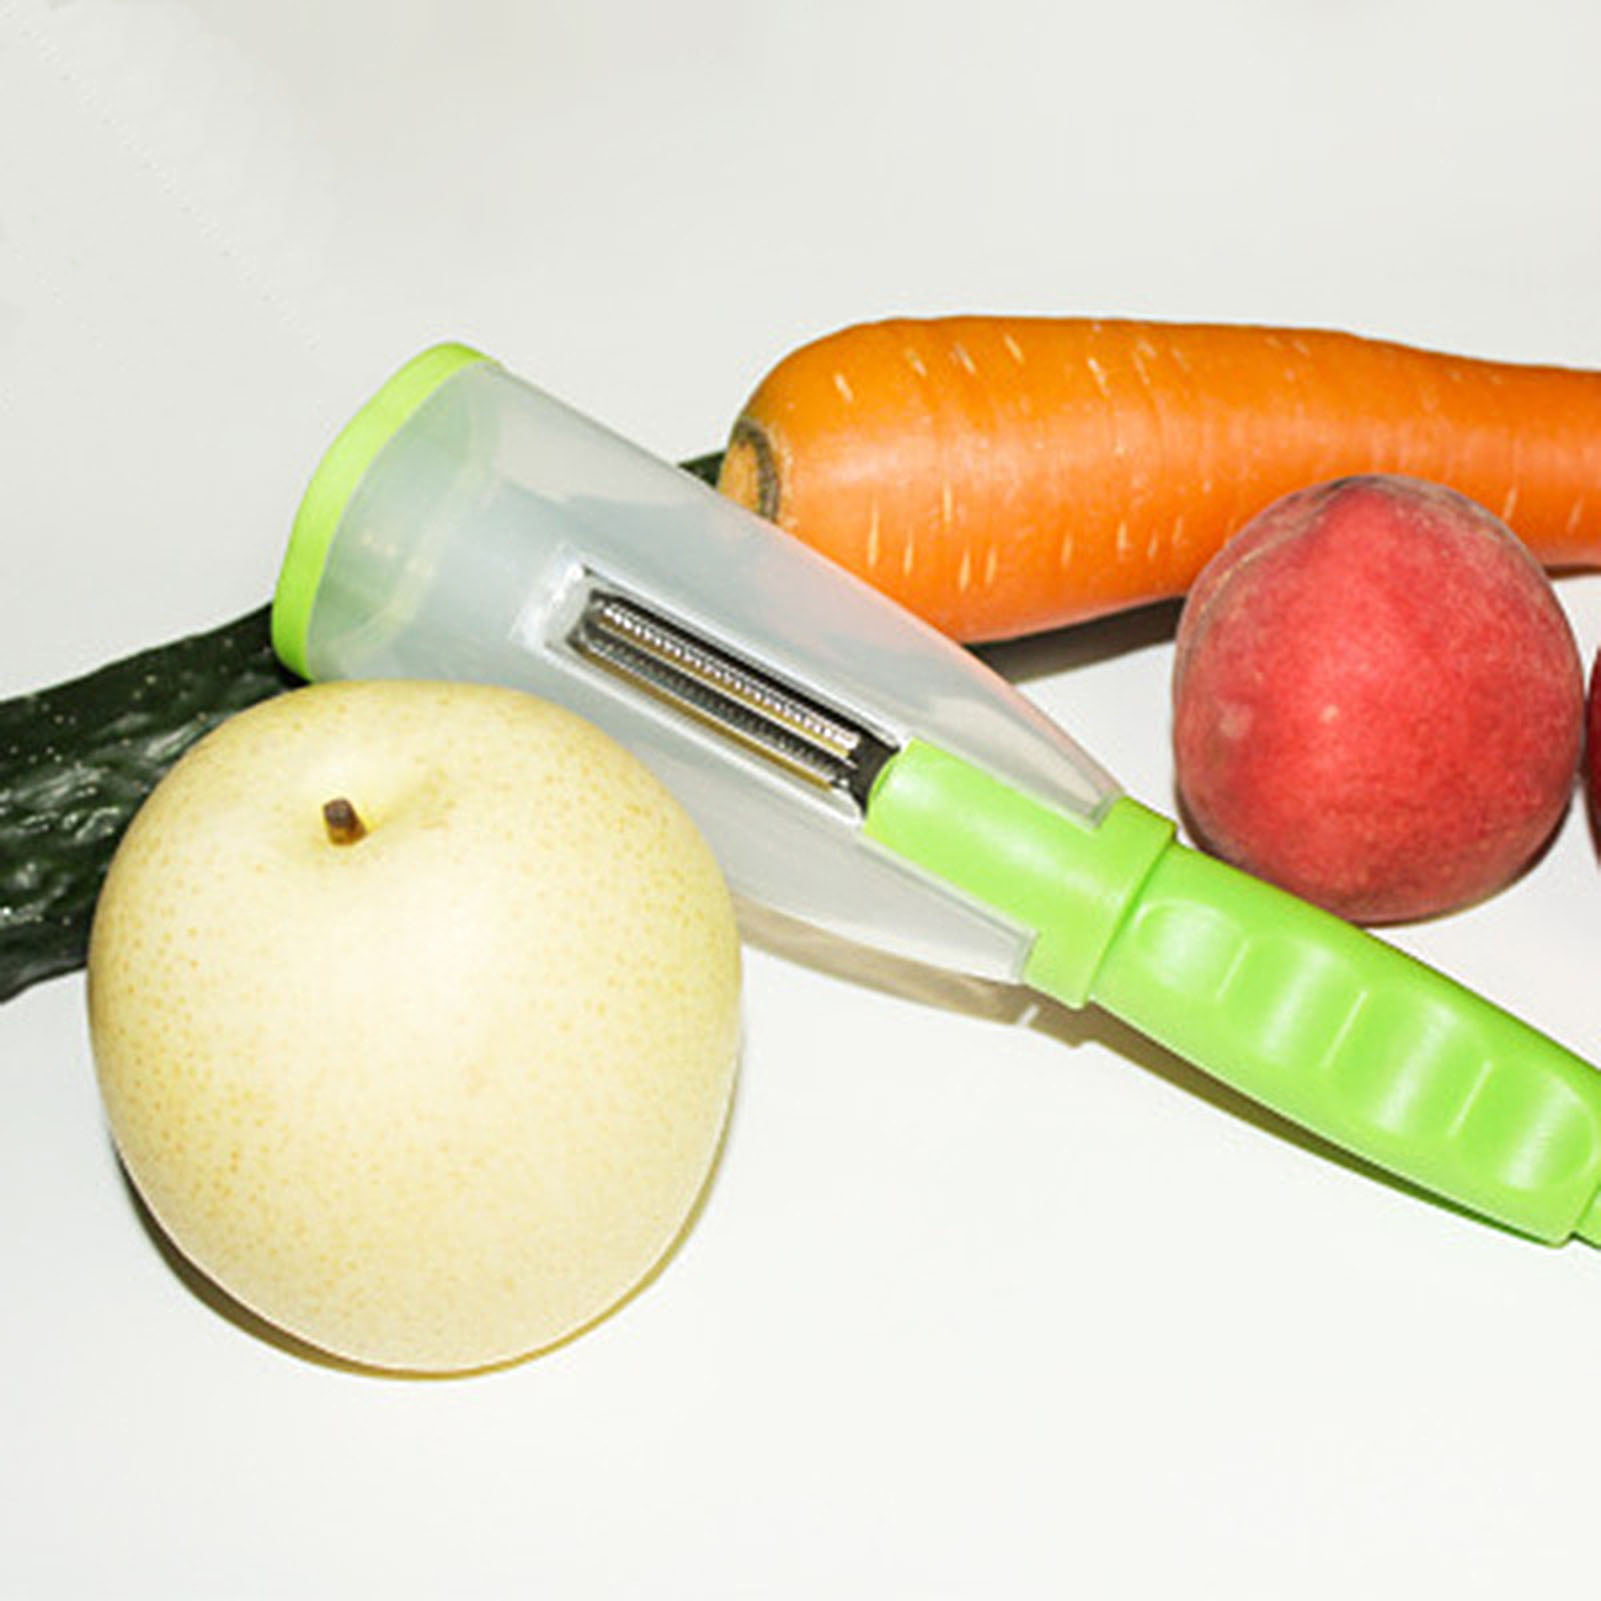 Valinks Valink Multi-function Peeler Convenience Durable Julienne Cutter Slicer Kitchen Tools for Vegetable Fruit, Size: Default, White